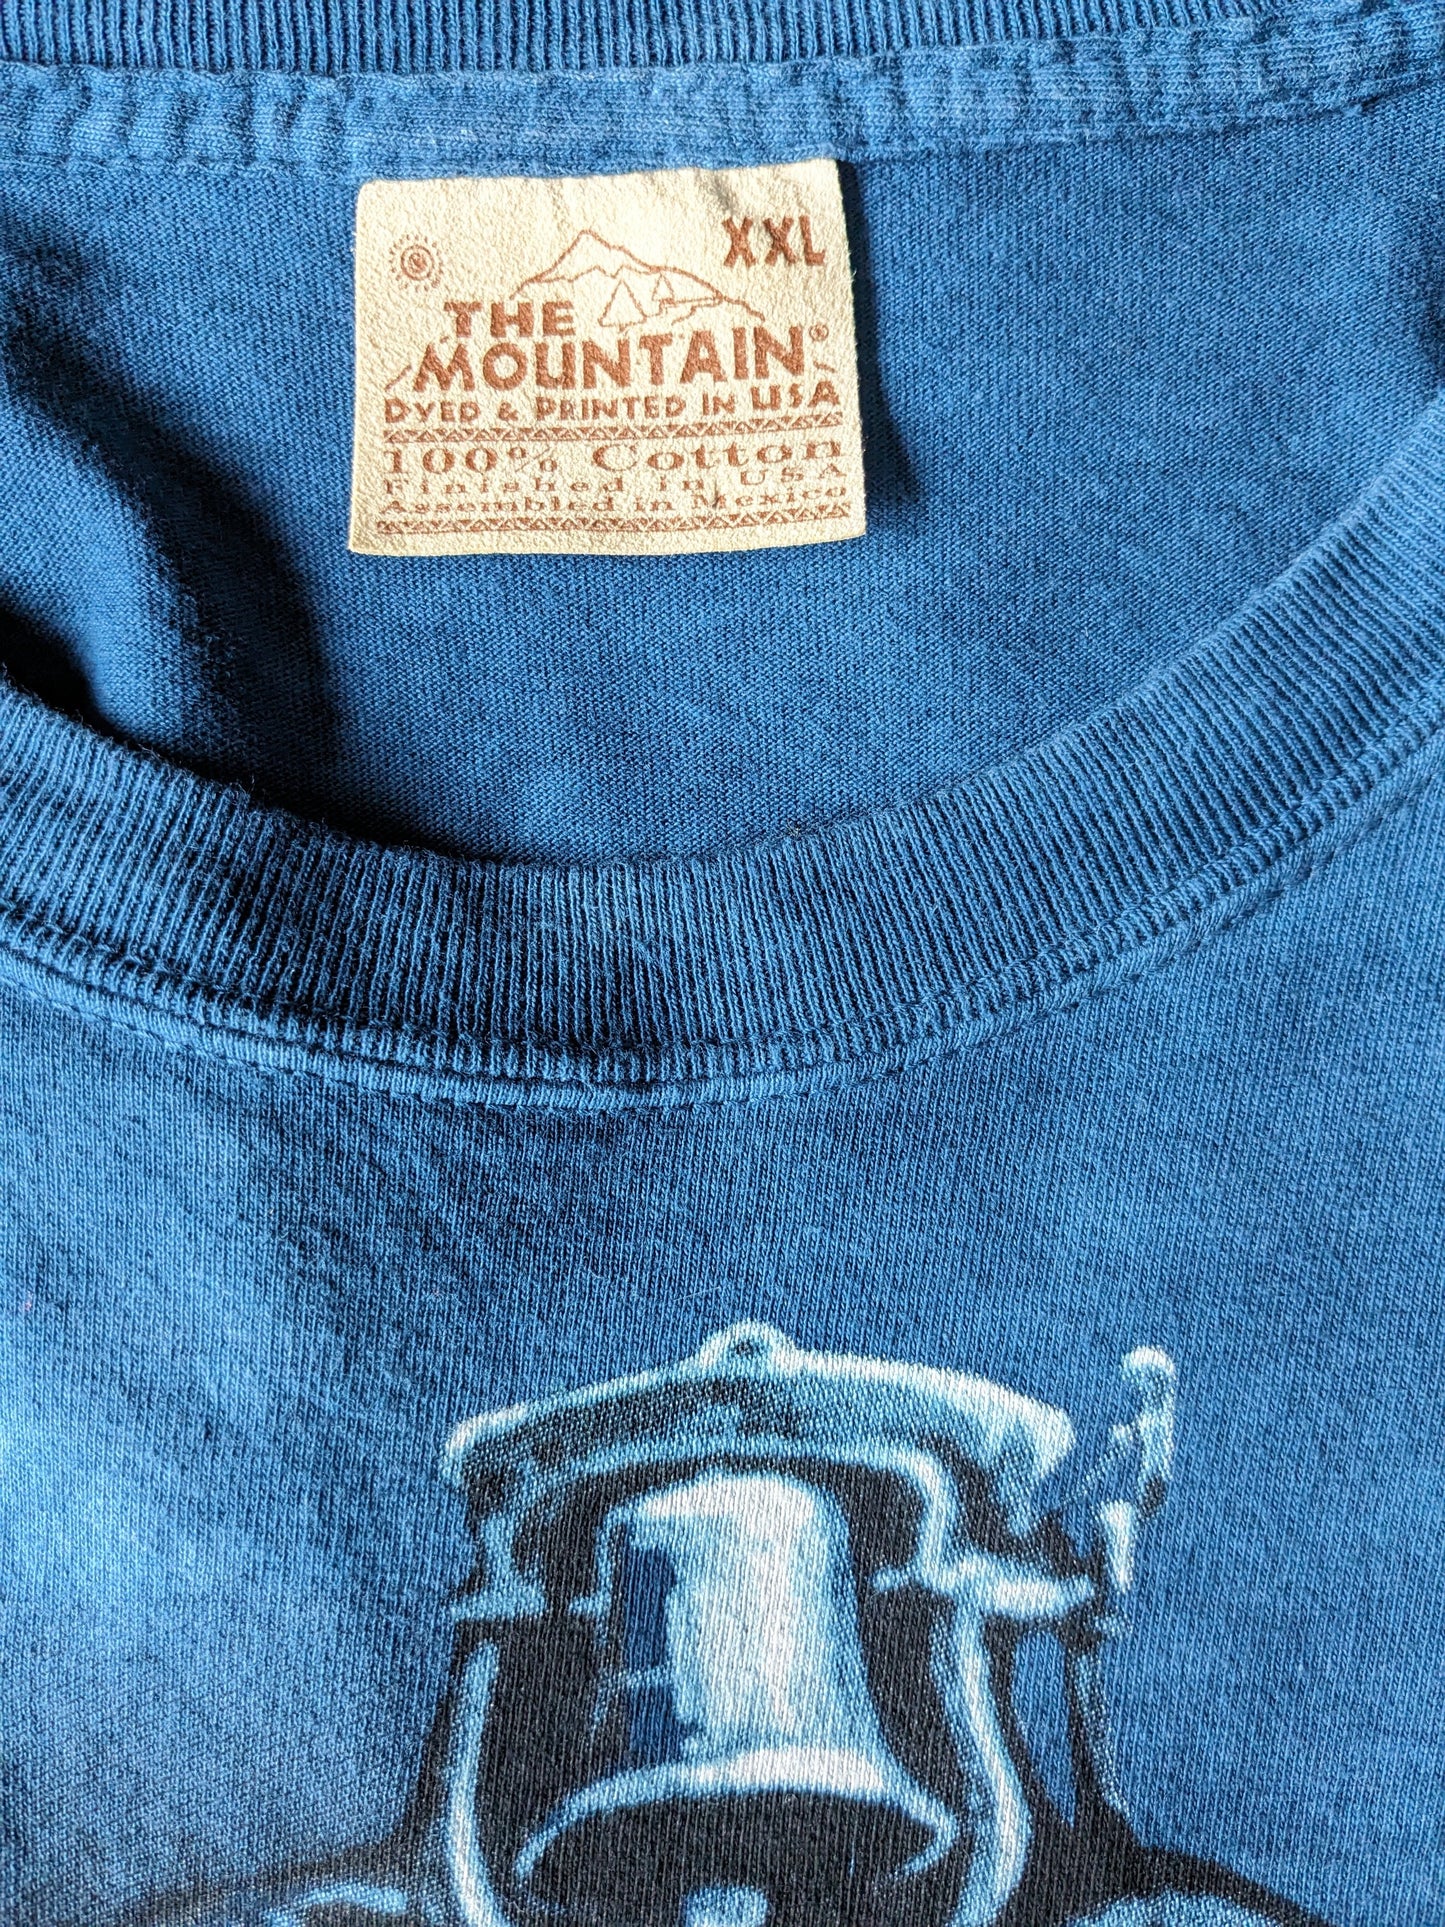 La camisa de montaña. Azul oscuro con estampado de locomotora. Tamaño 2xl / xxl.